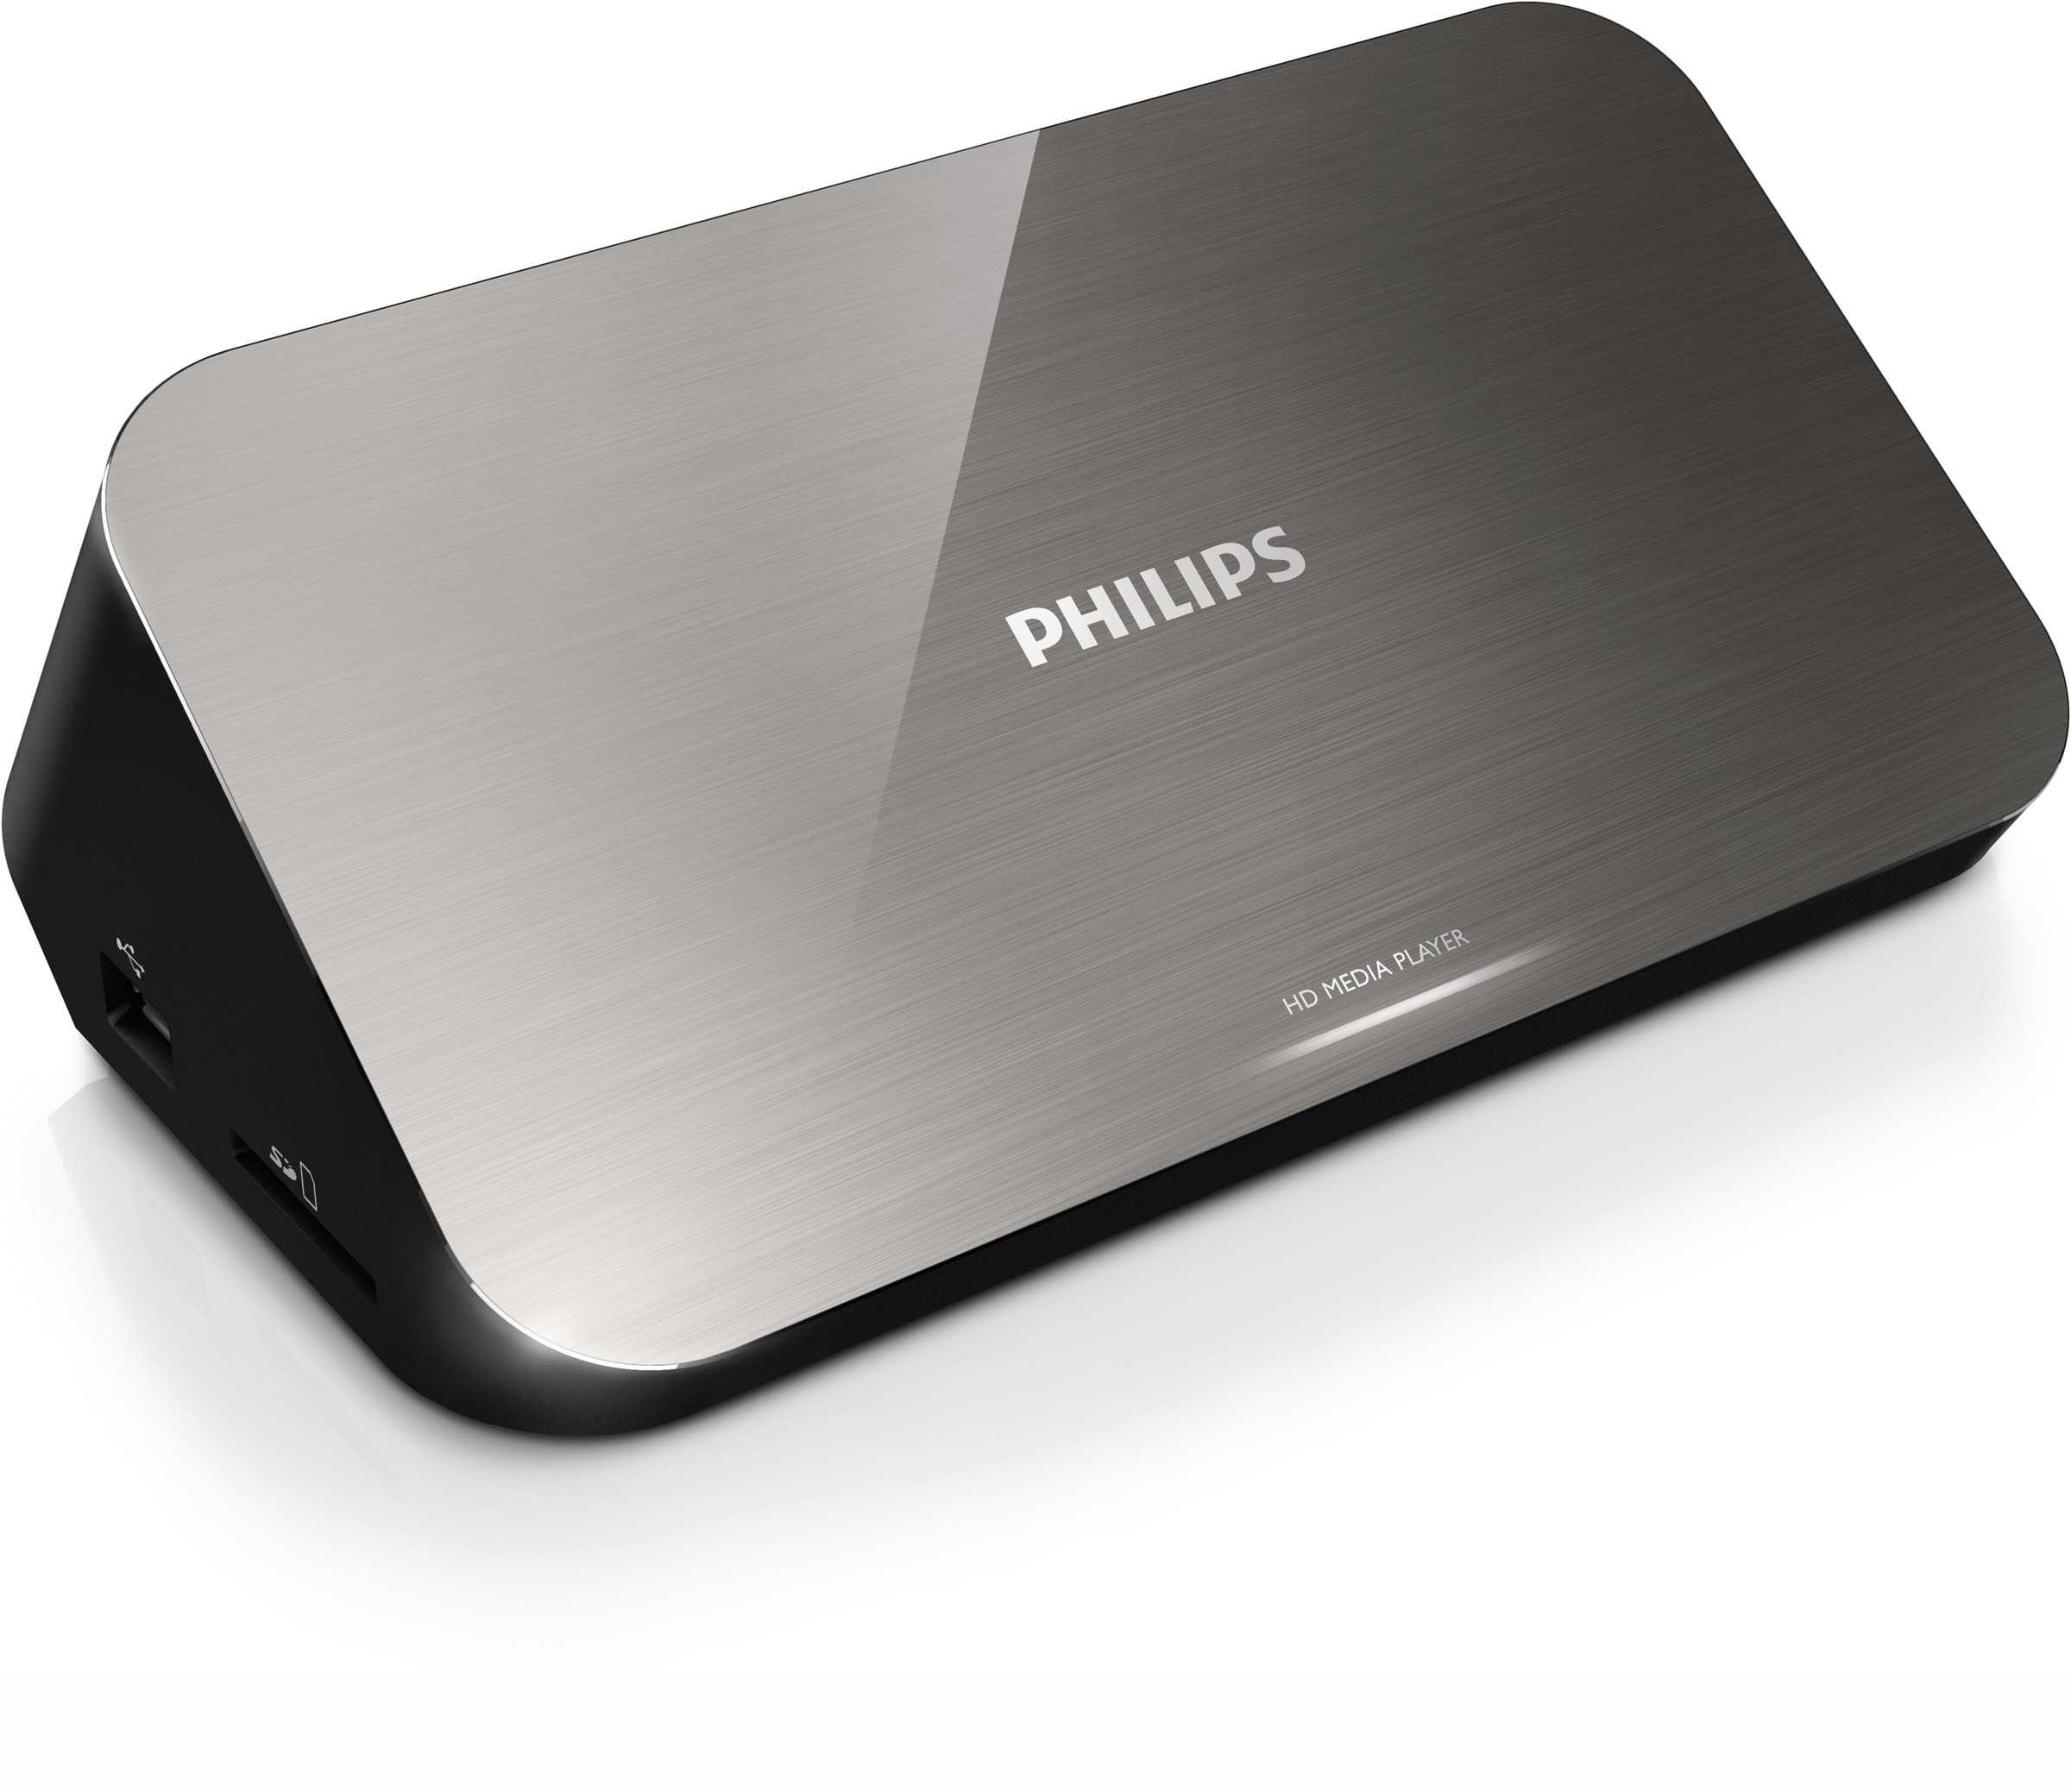 Philips hmp7001 купить по акционной цене , отзывы и обзоры.